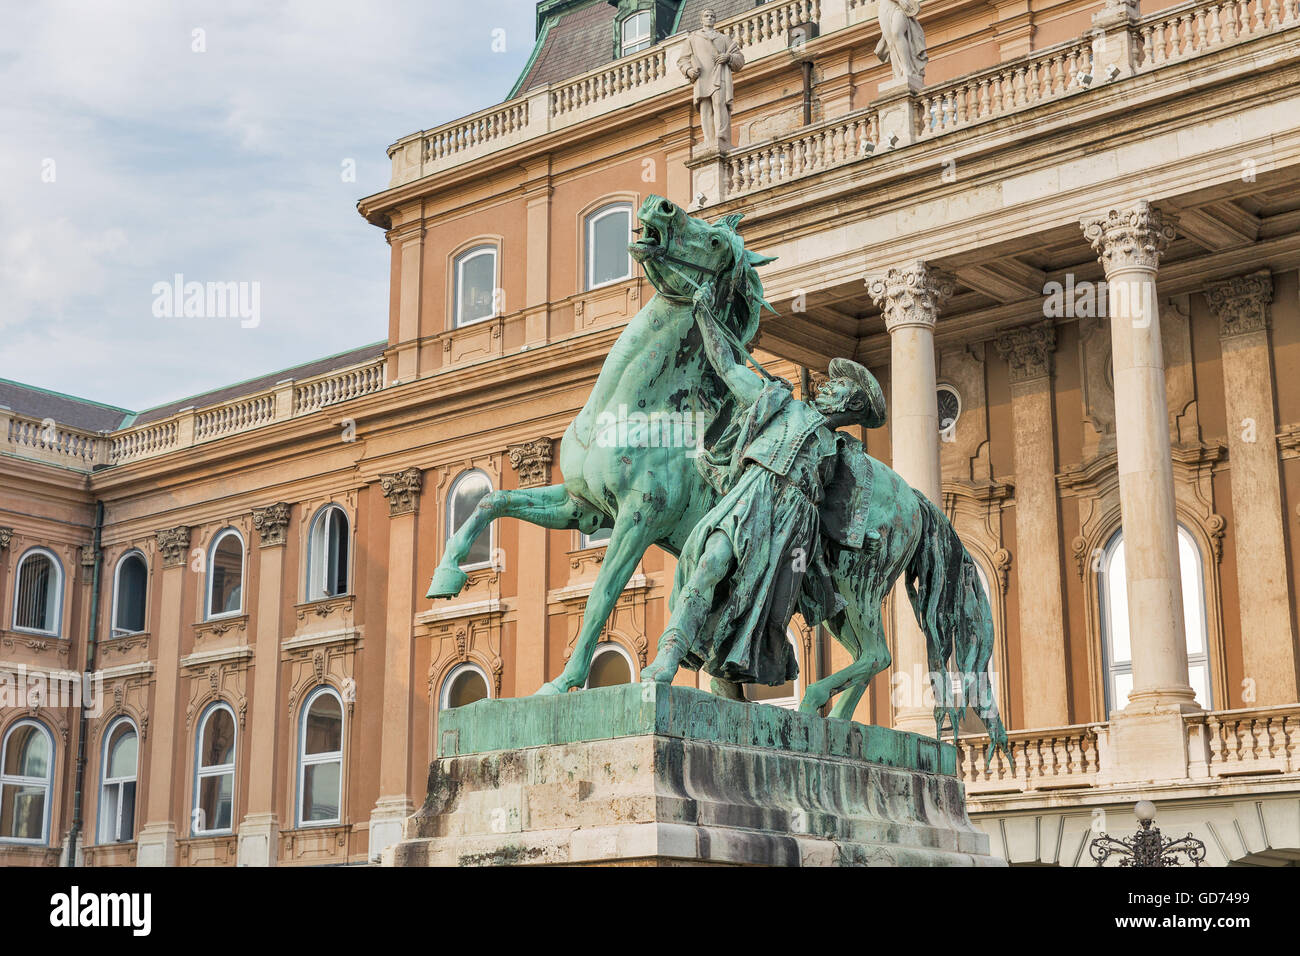 Statua del Csikos, ungherese horse wrangler, nella corte del Castello di Buda a Budapest Ungheria. Statua Lofekezo da Vastagh Gyor Foto Stock